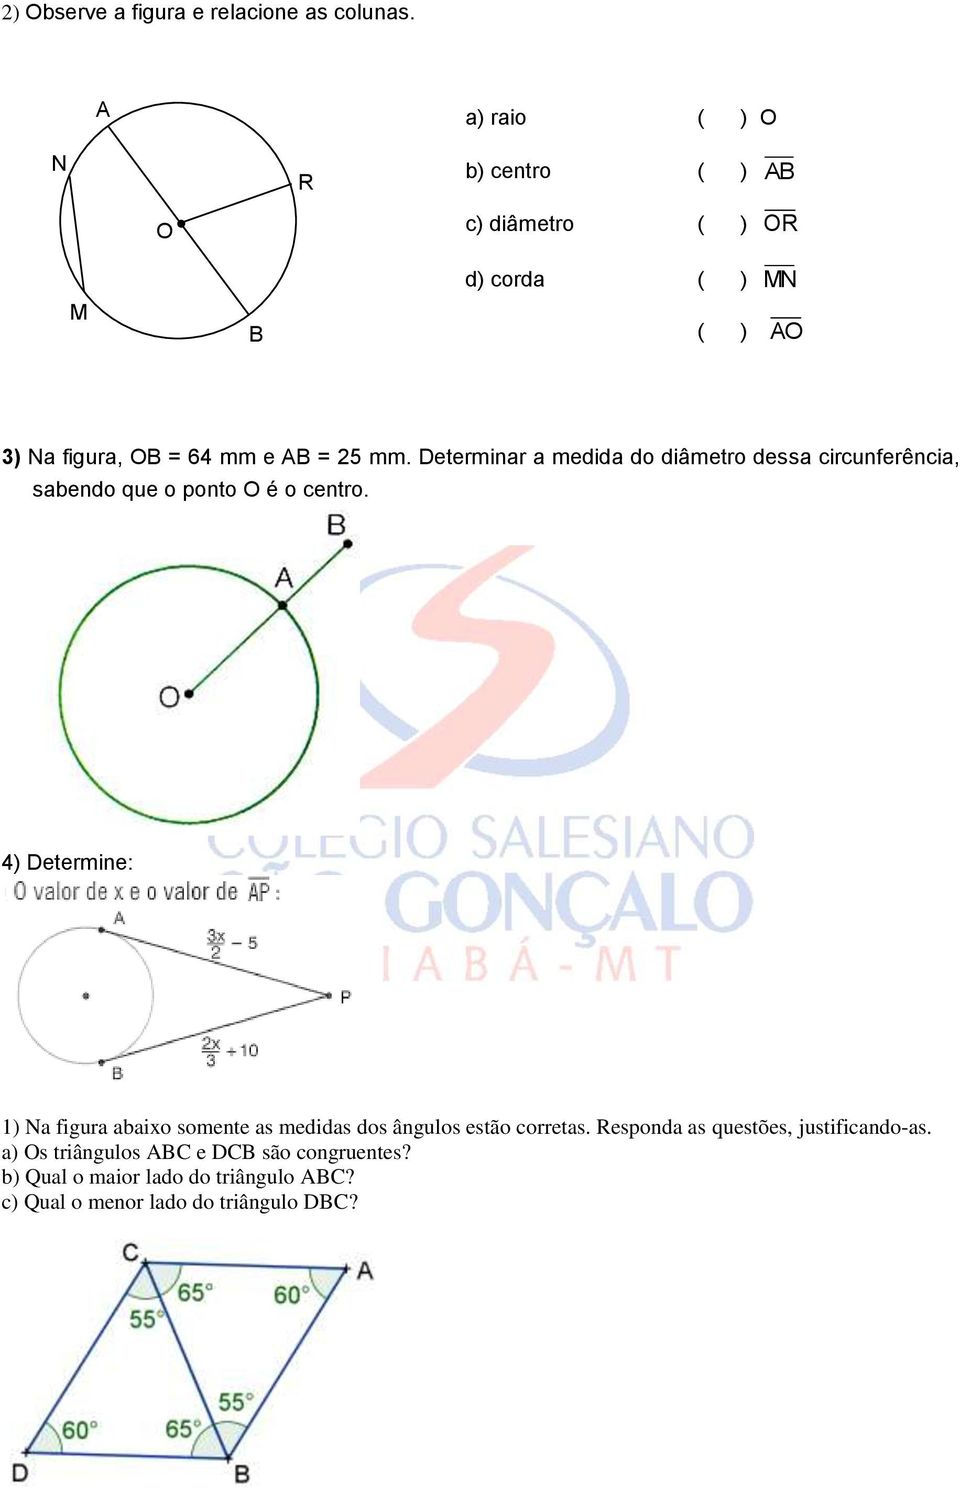 Determinar a medida do diâmetro dessa circunferência, sabendo que o ponto O é o centro.